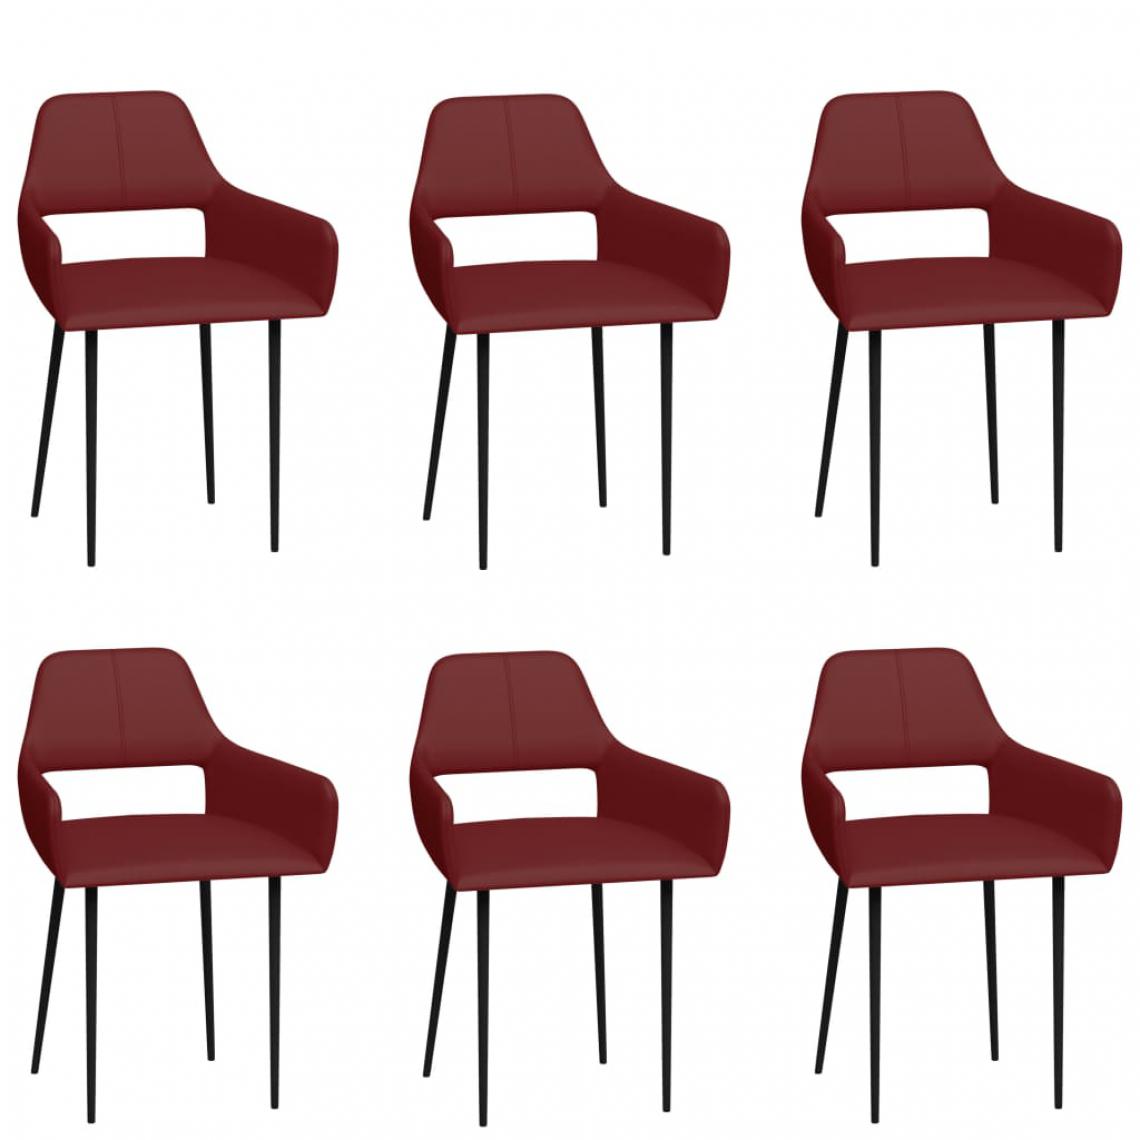 Icaverne - Admirable Fauteuils et chaises ligne Bucarest Chaises de salle à manger 6 pcs Rouge bordeaux Similicuir - Chaises